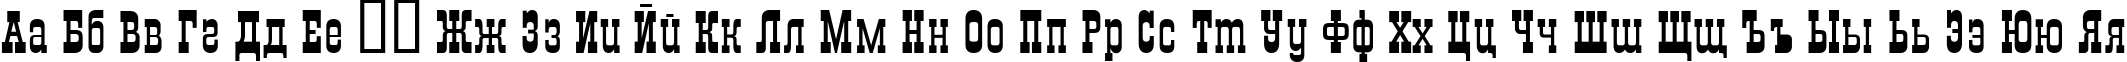 Пример написания русского алфавита шрифтом Saloon